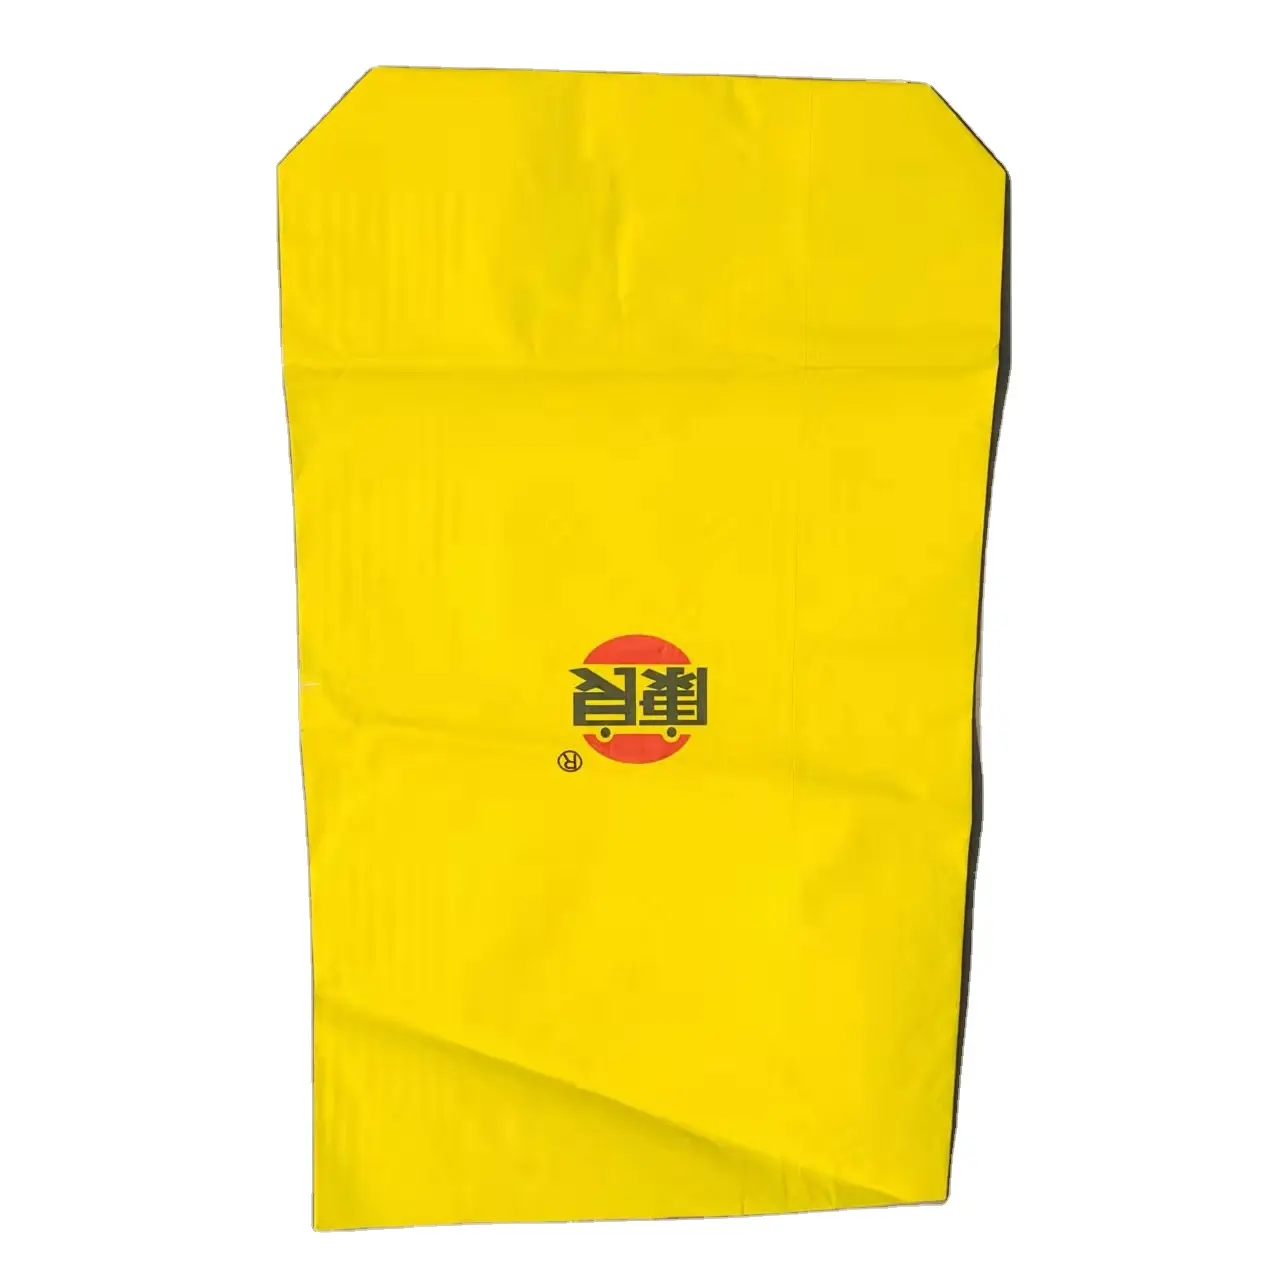 Neue Fancy Design Popcorn Verpackung Taschen Snack Papiertüte